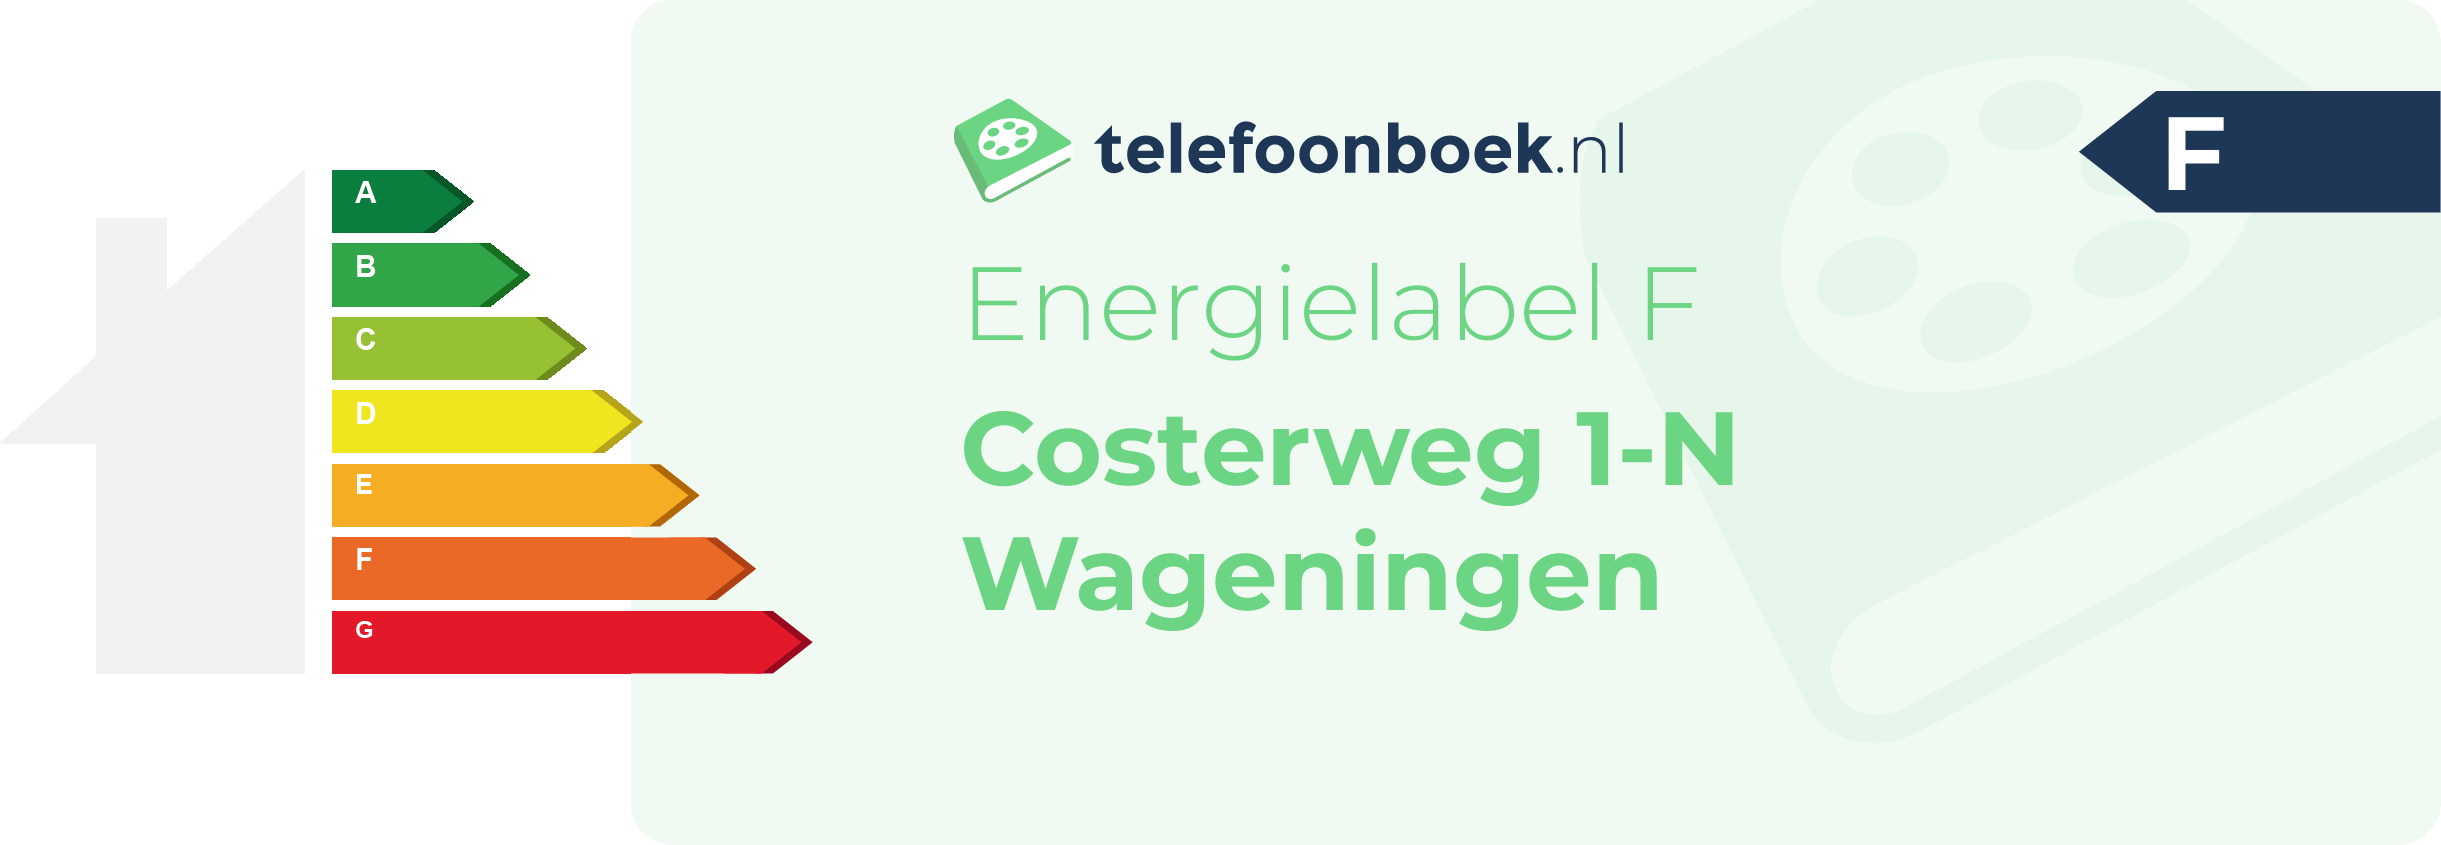 Energielabel Costerweg 1-N Wageningen